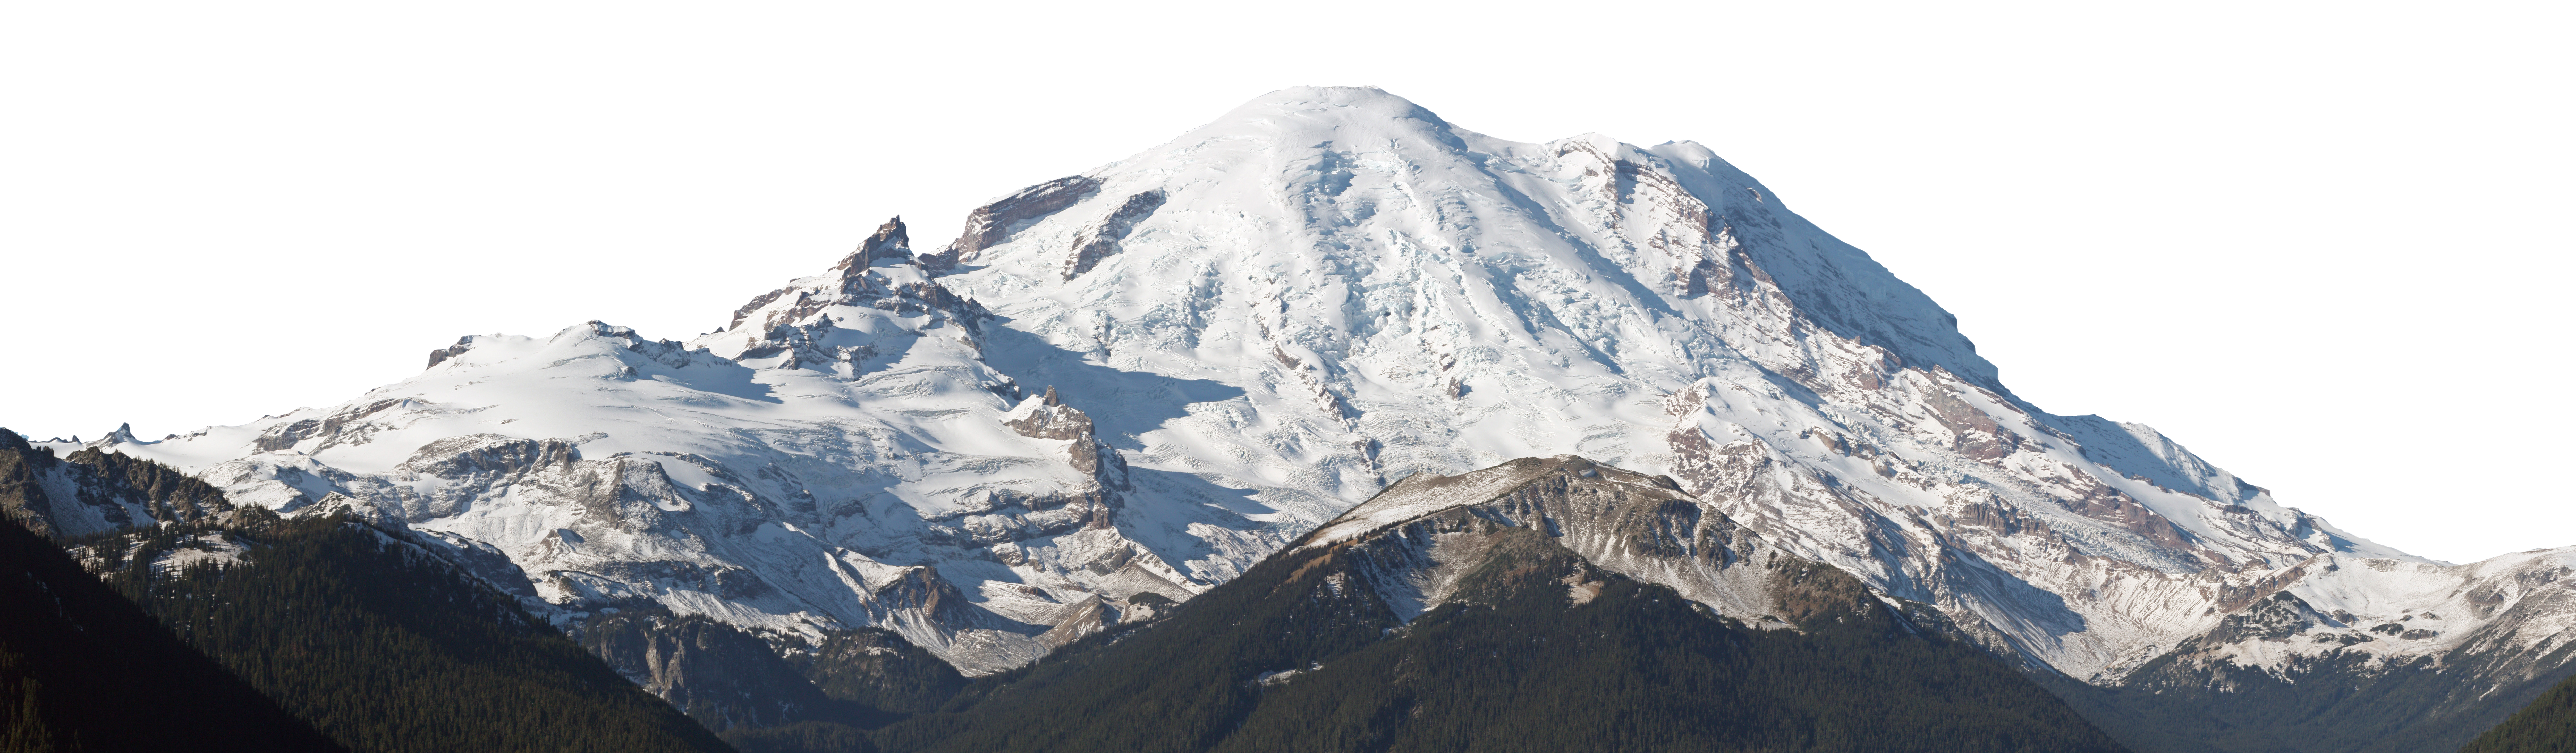 Montaña nevada, montaña marrón cubierta de nieve